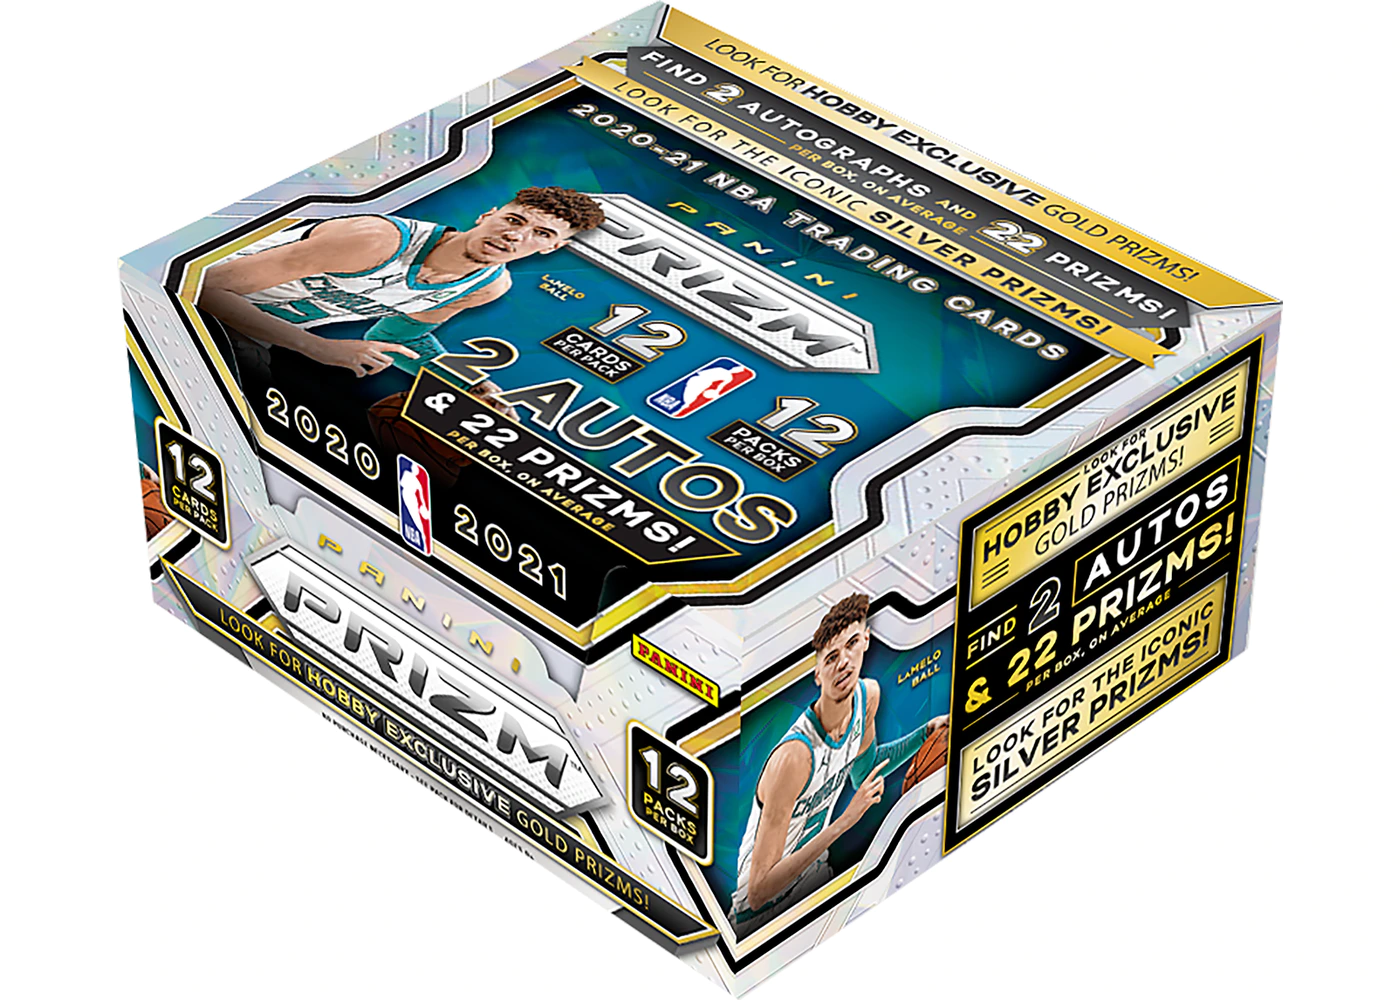 2020/21 Panini Prizm NBA Basketball Hobby Pack / Box SALE!